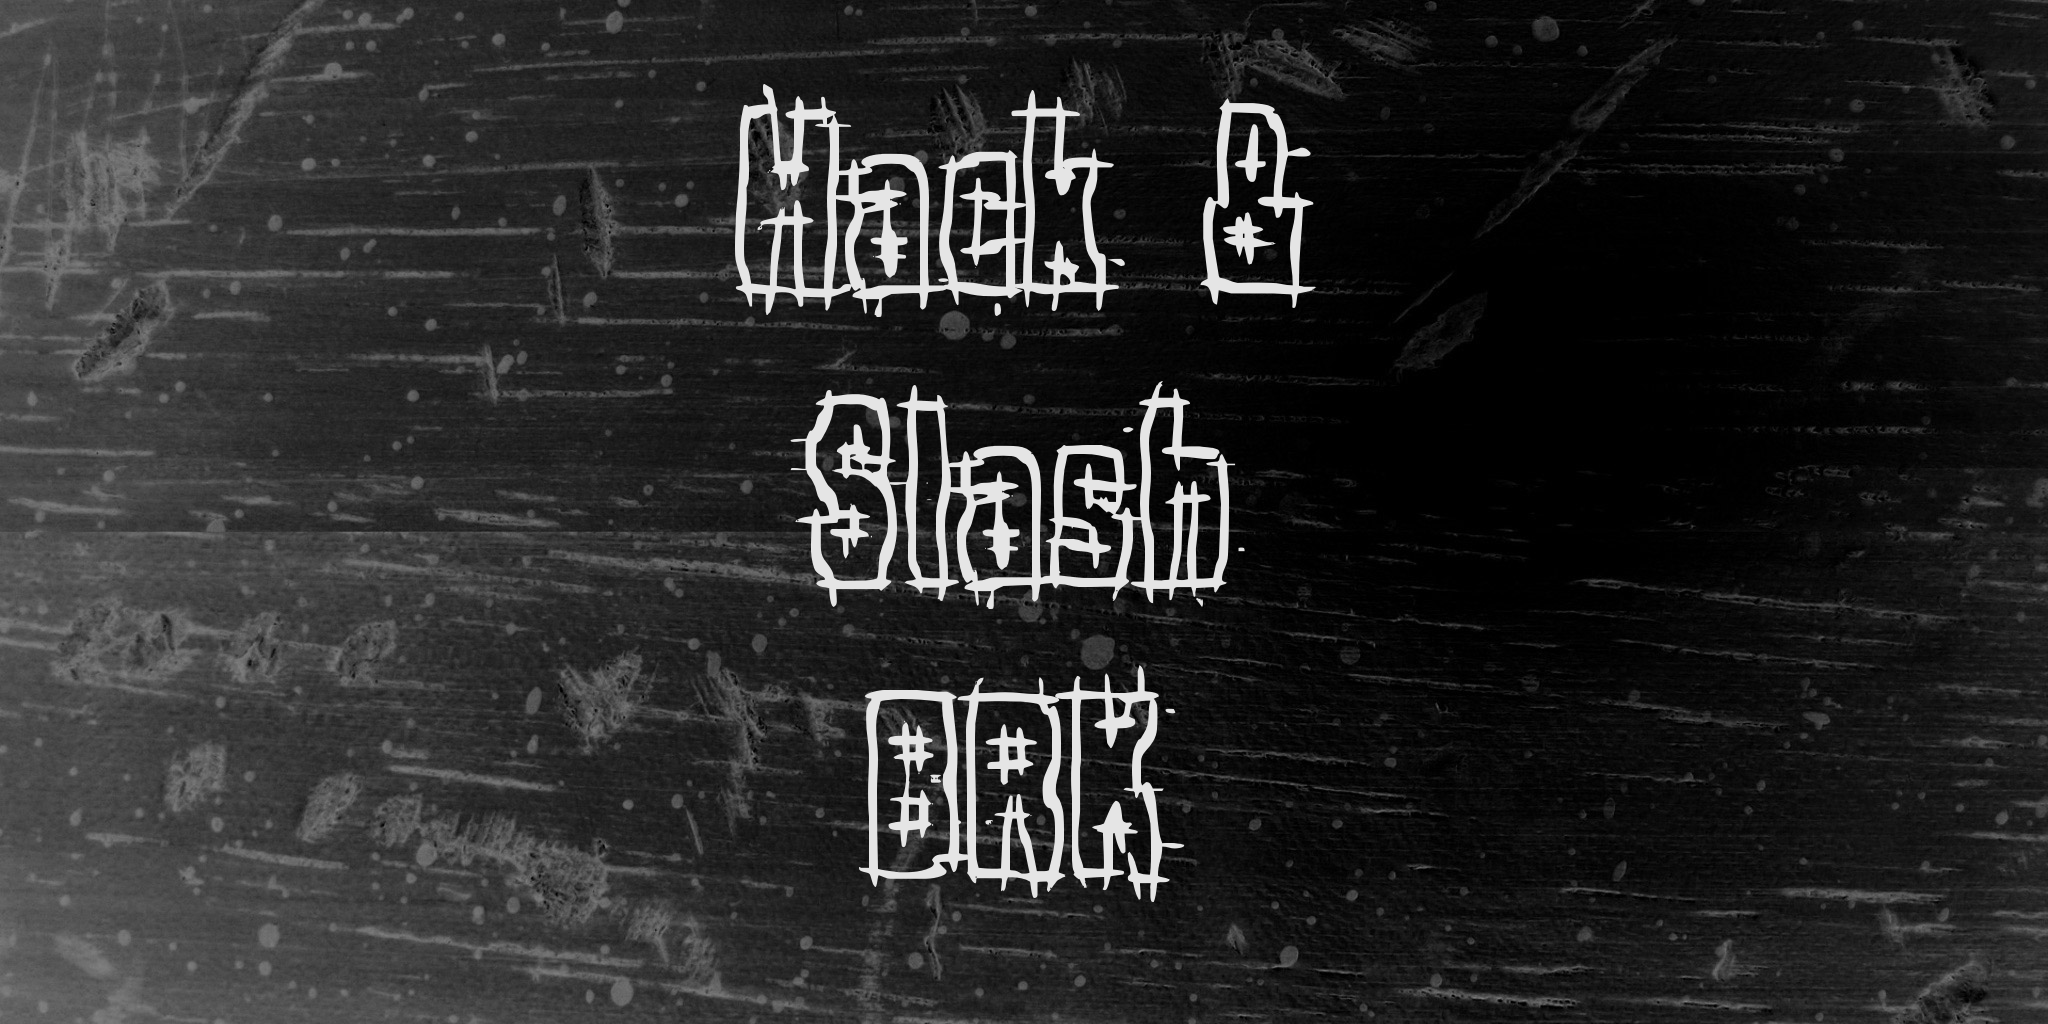 Hack & Slash Brk